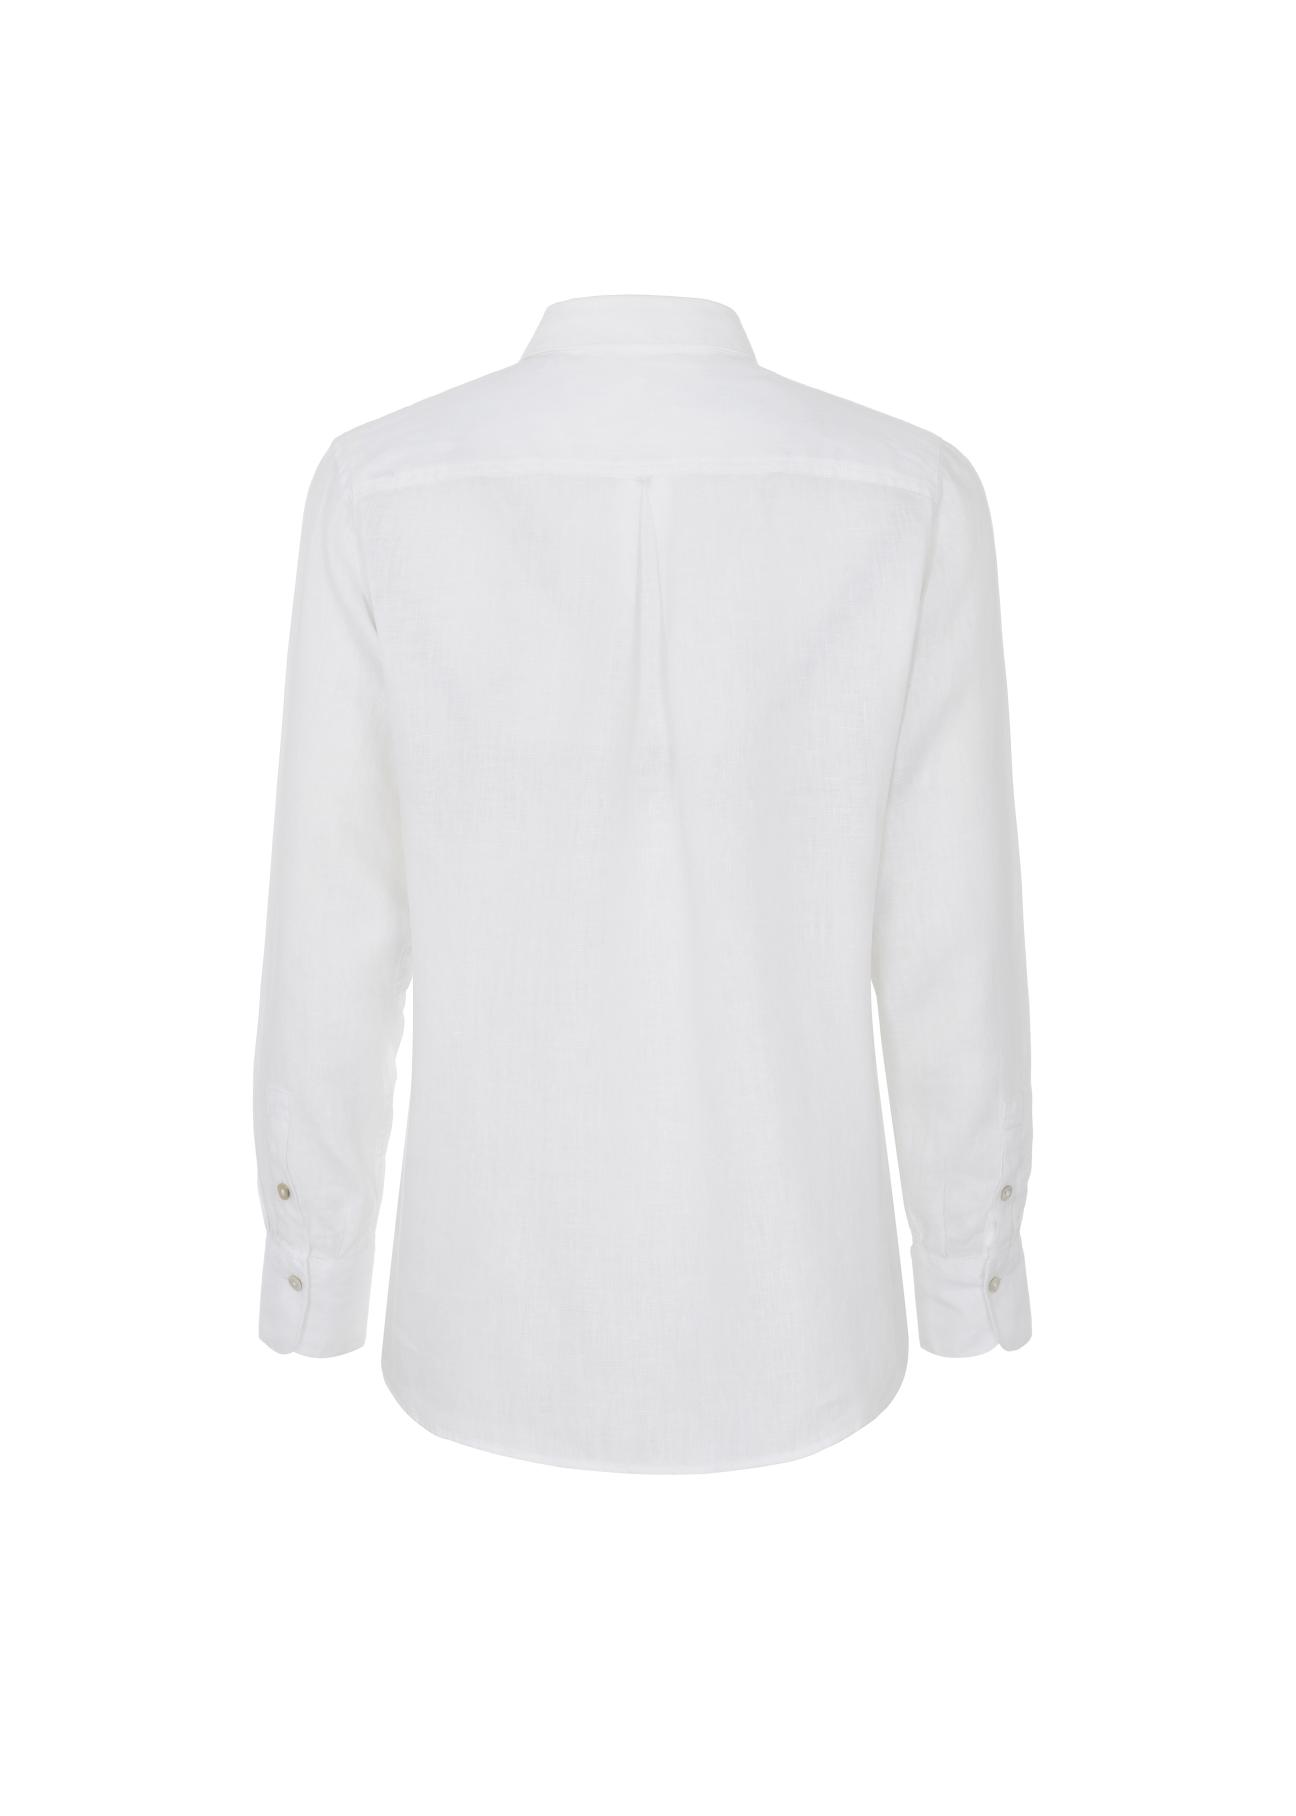 Lniana biała koszula damska KOSDT-0091-11(W22)-04